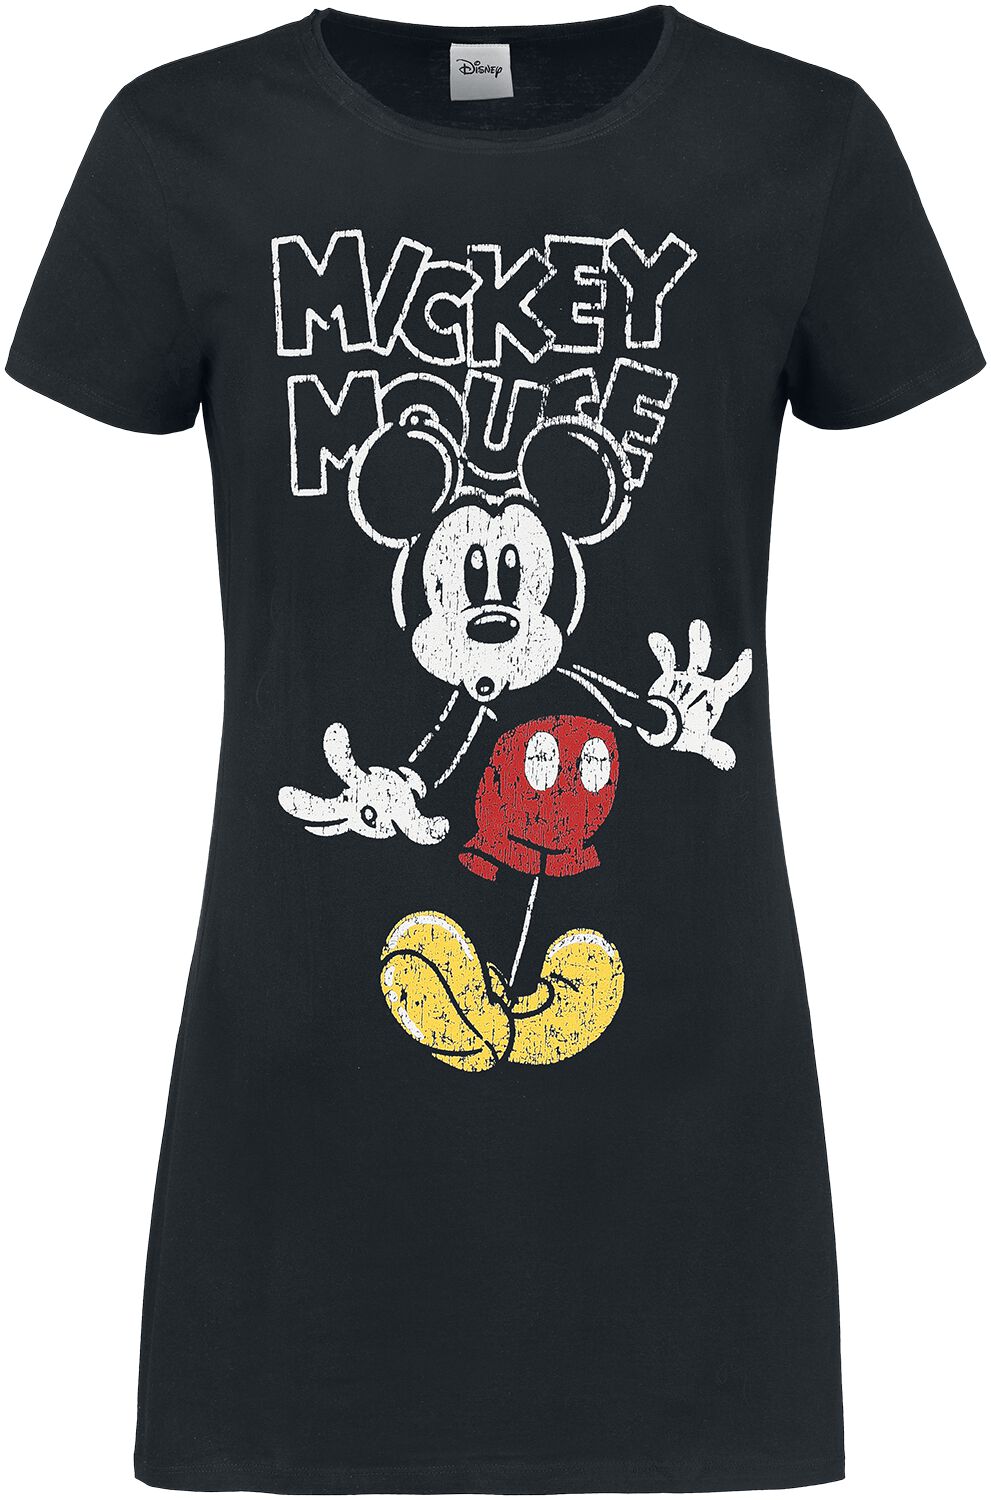 Mickey Mouse - Disney Kurzes Kleid - S bis XL - für Damen - Größe L - schwarz  - EMP exklusives Merchandise!